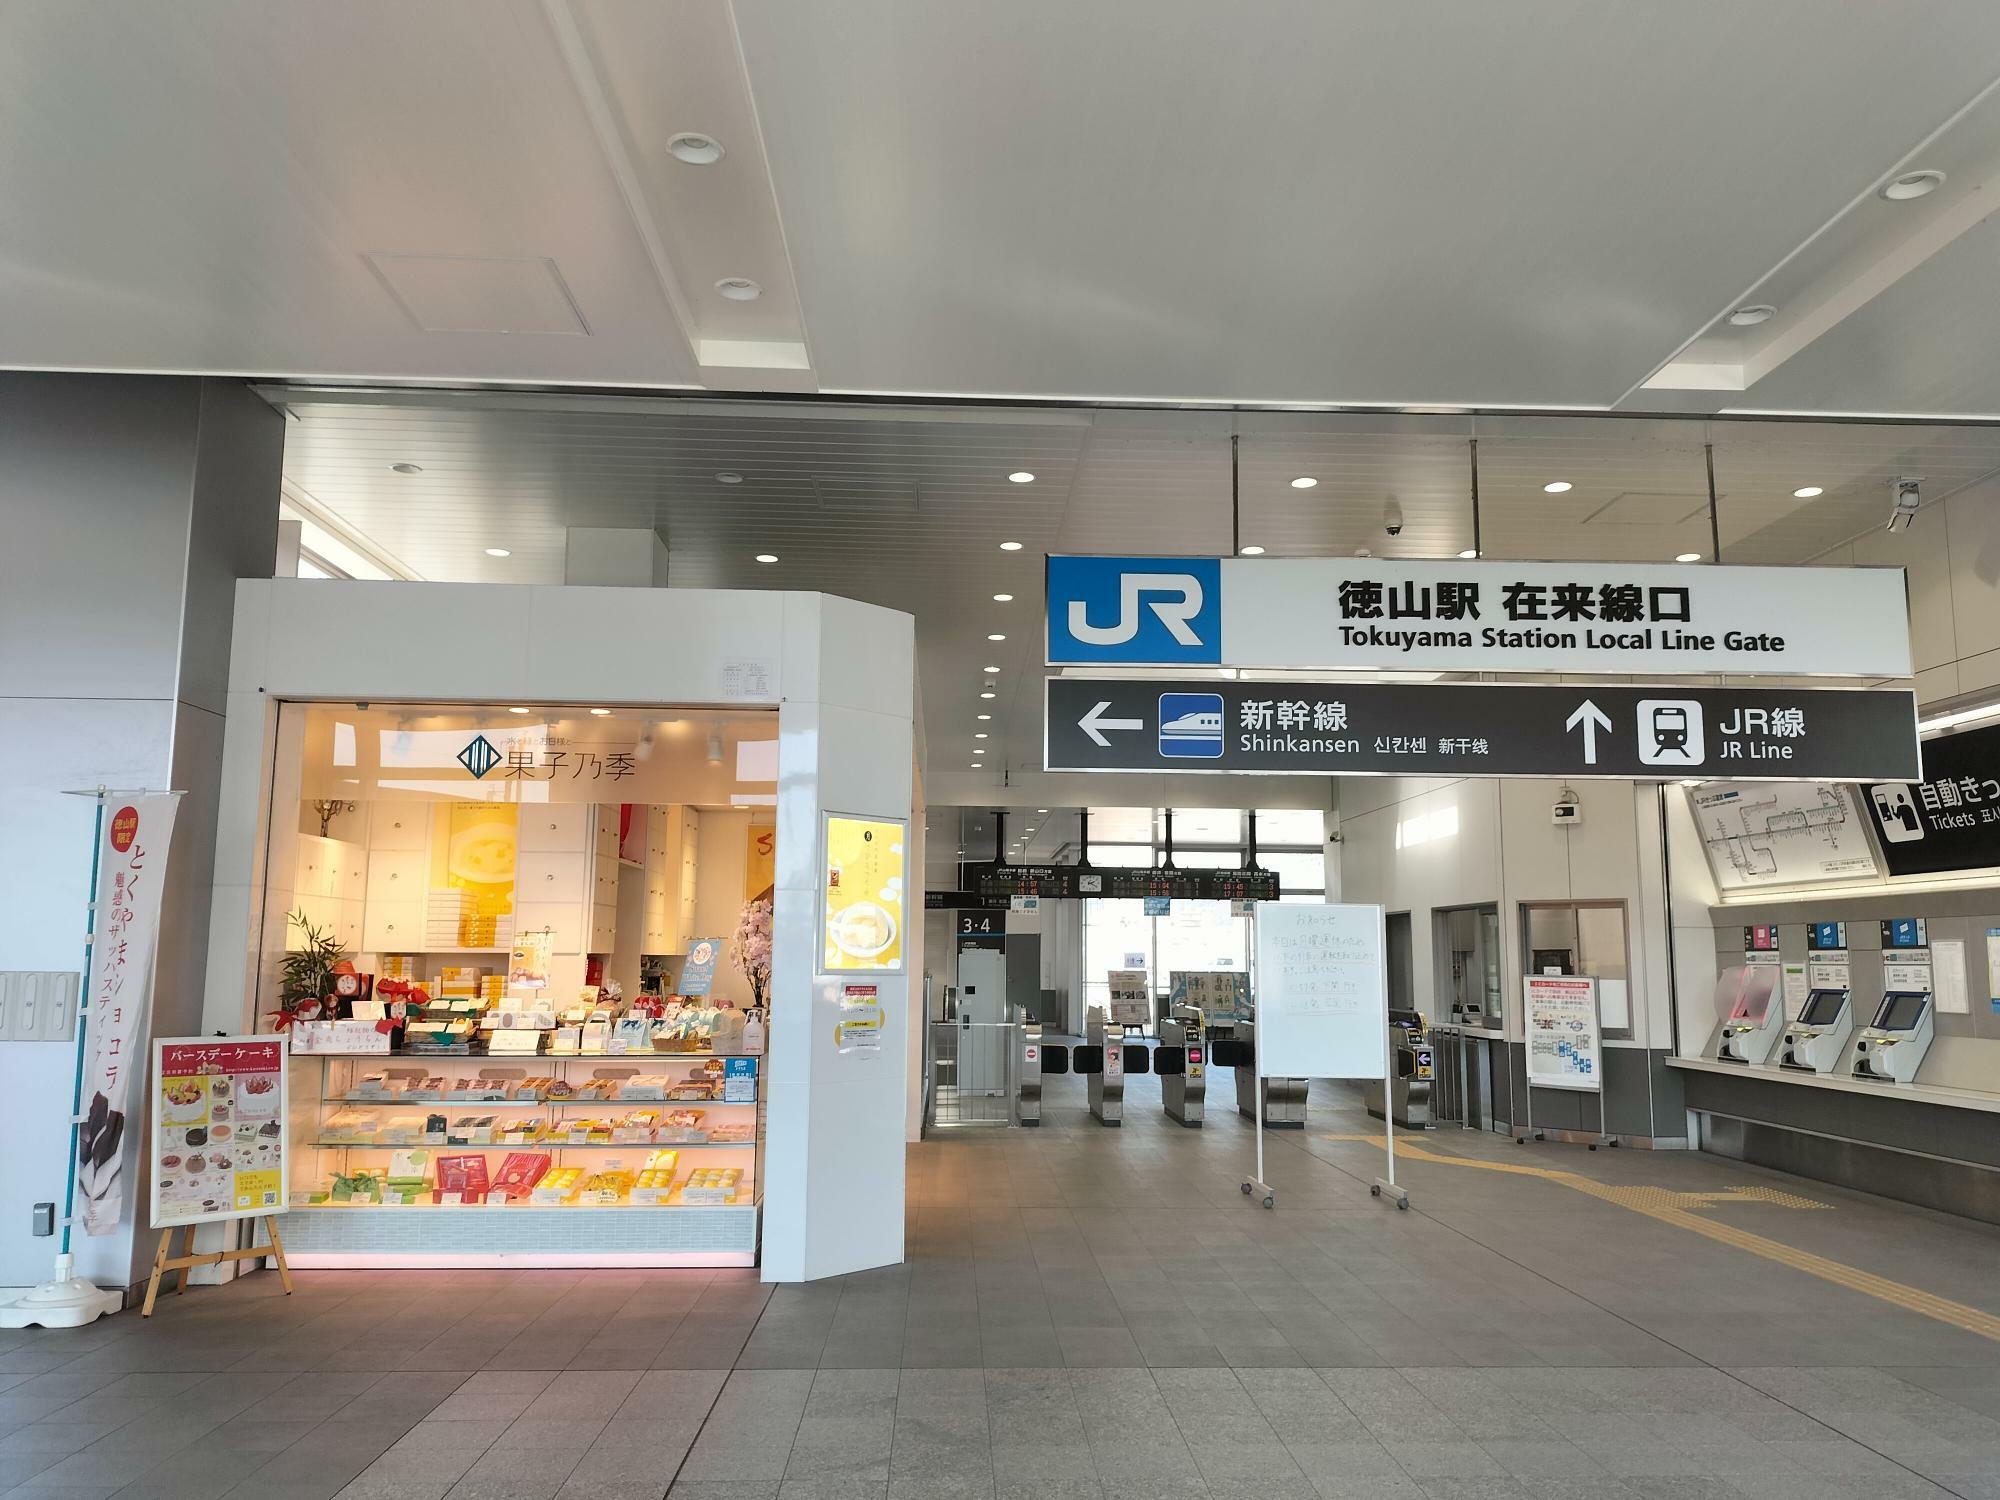 場所は徳山駅 在来線口そばです。